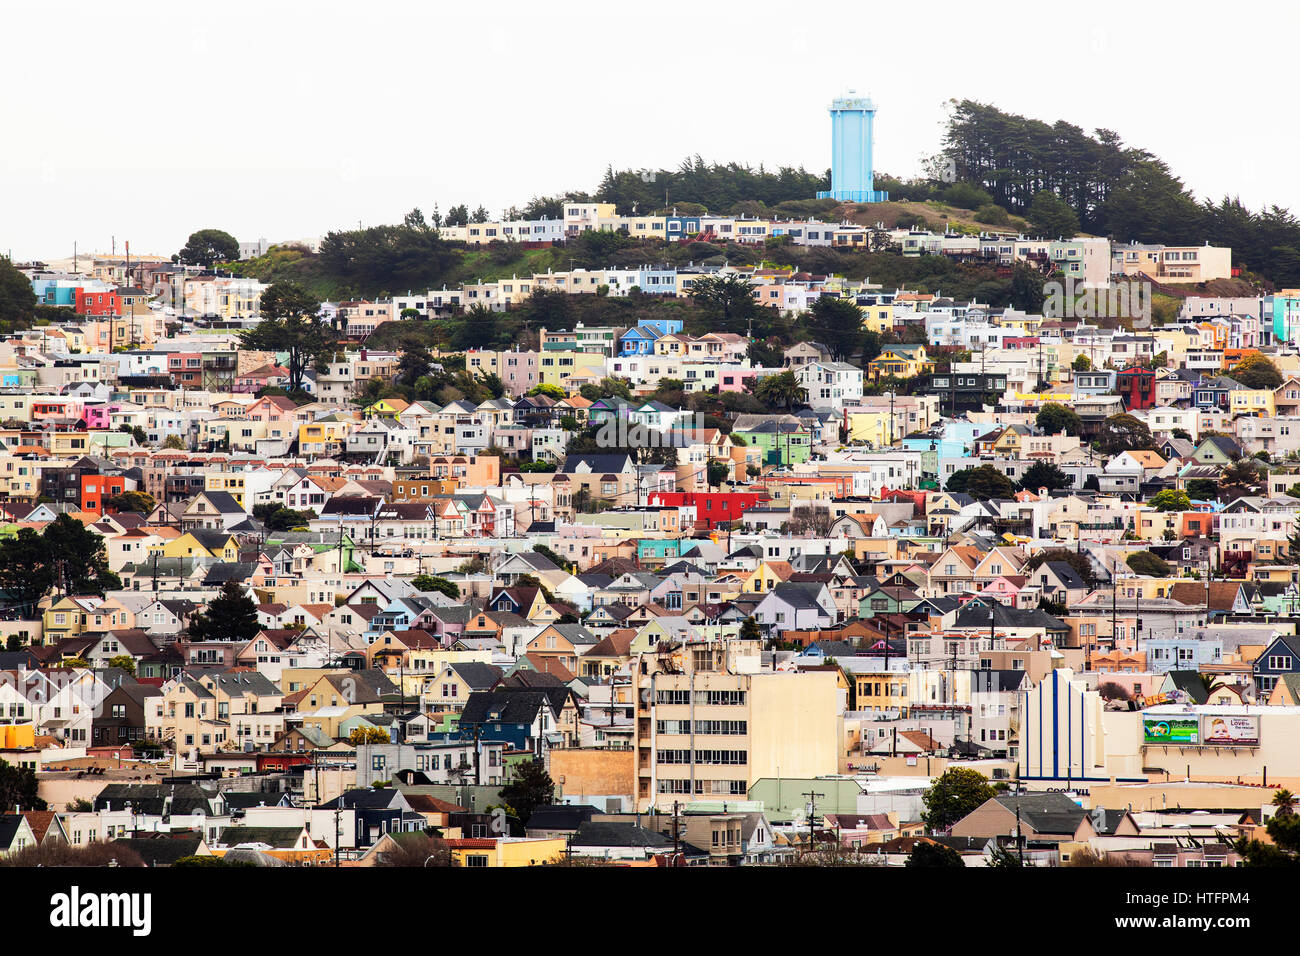 Hang mit Häusern in einem Viertel von San Francisco überfüllt. Stockfoto